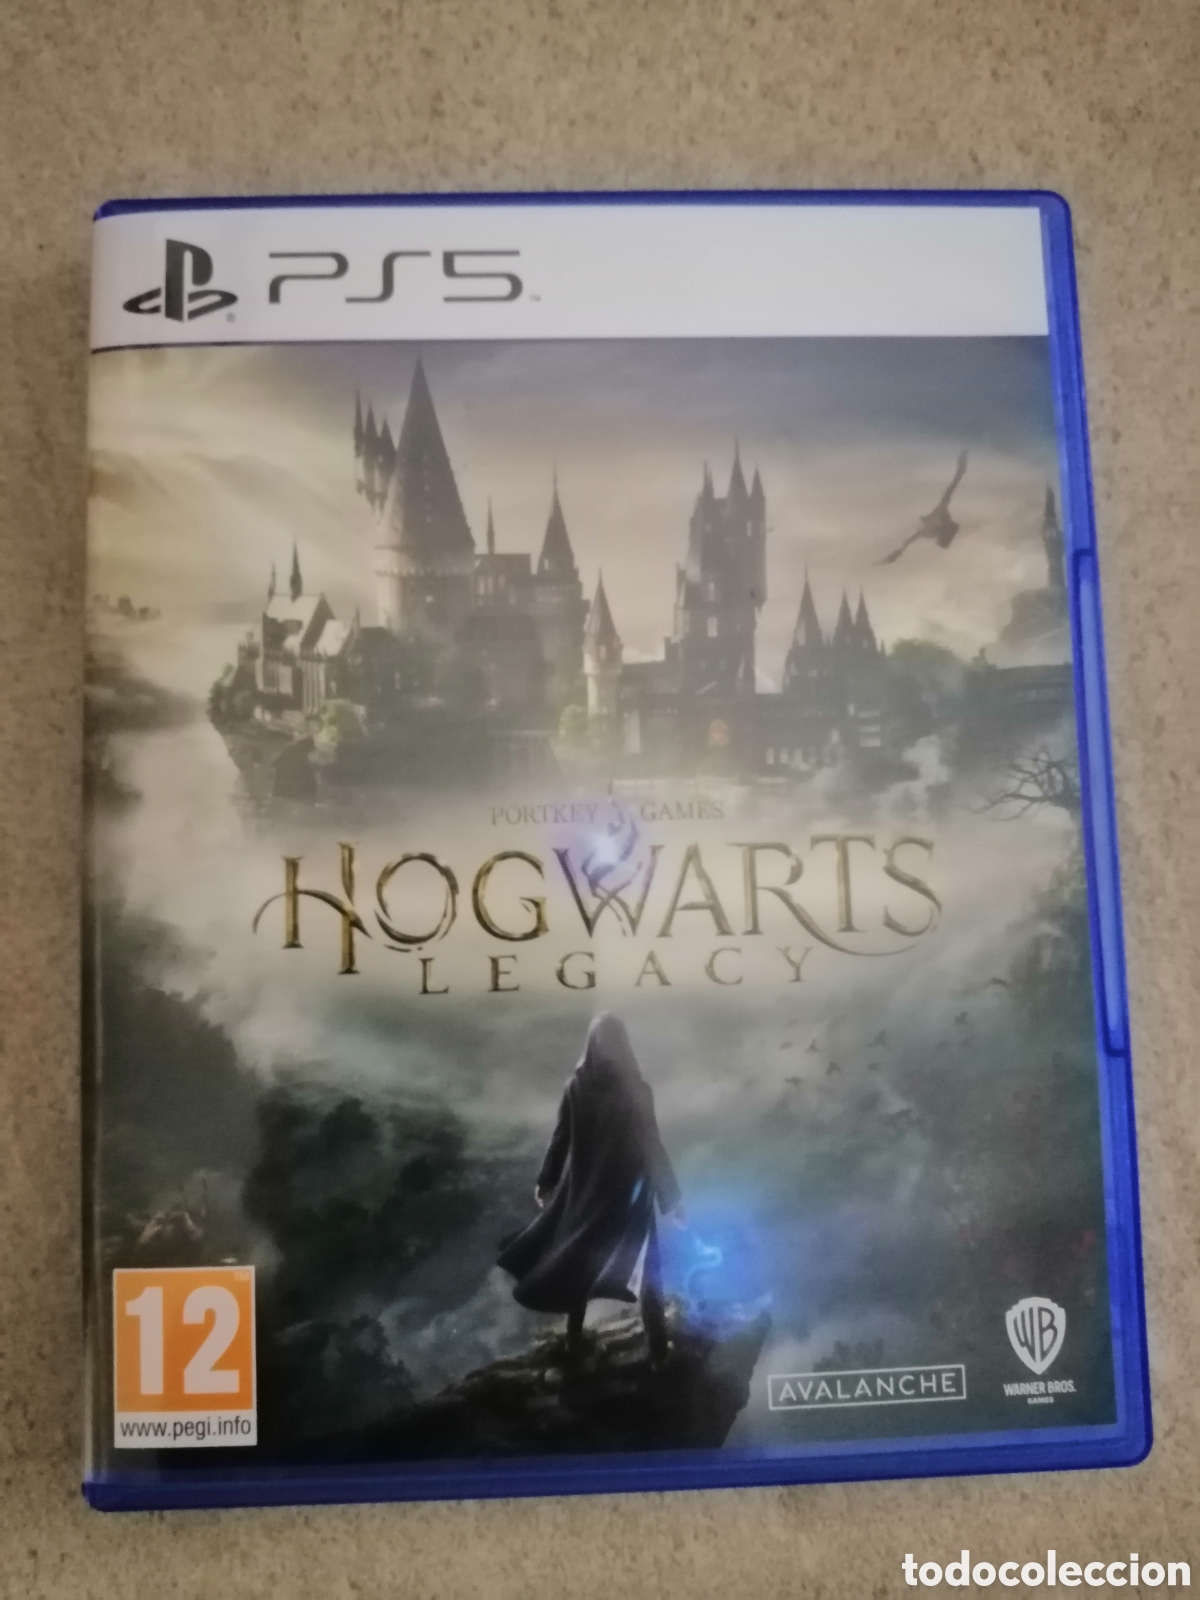 hogwarts legacy ps5. harry potter - Acquista Videogiochi e console PS4 su  todocoleccion